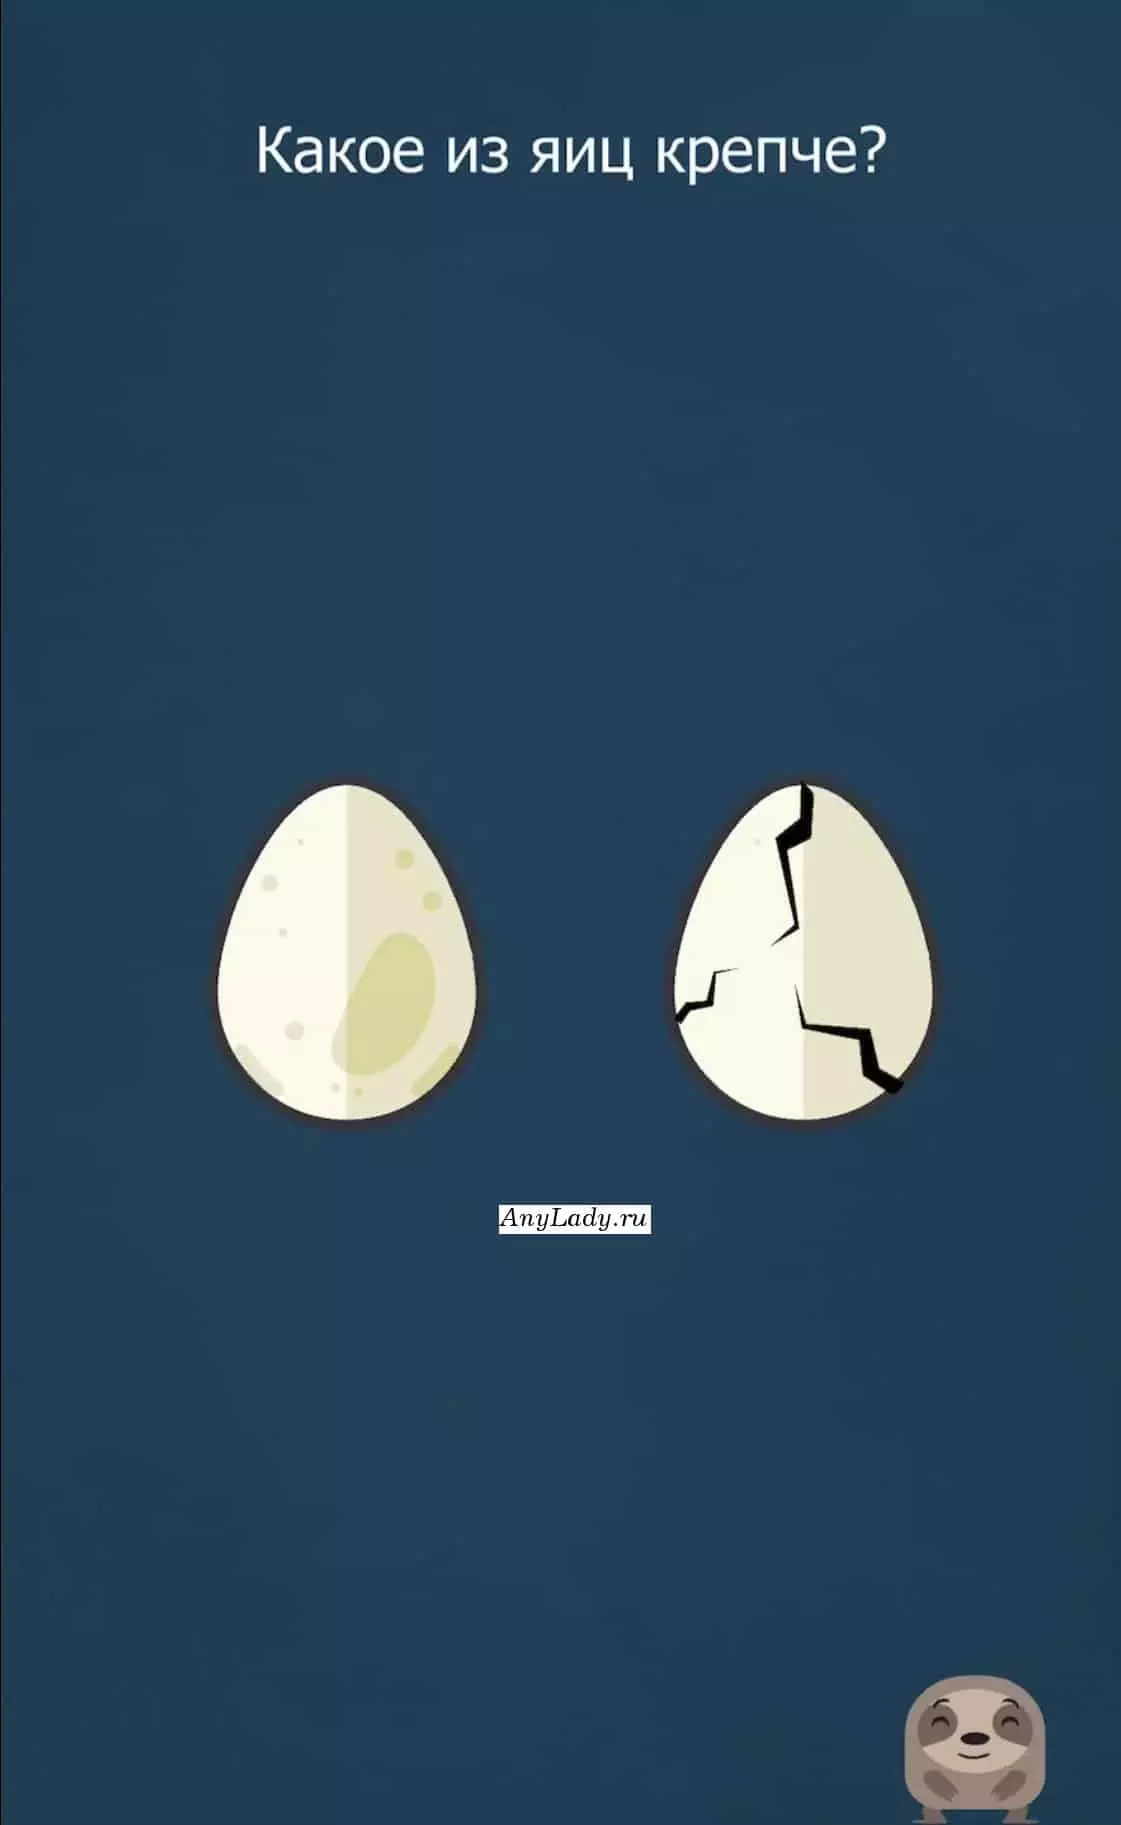 Кликните пальцами единовременно на оба яйца - не сколько раз и одно из них треснет.